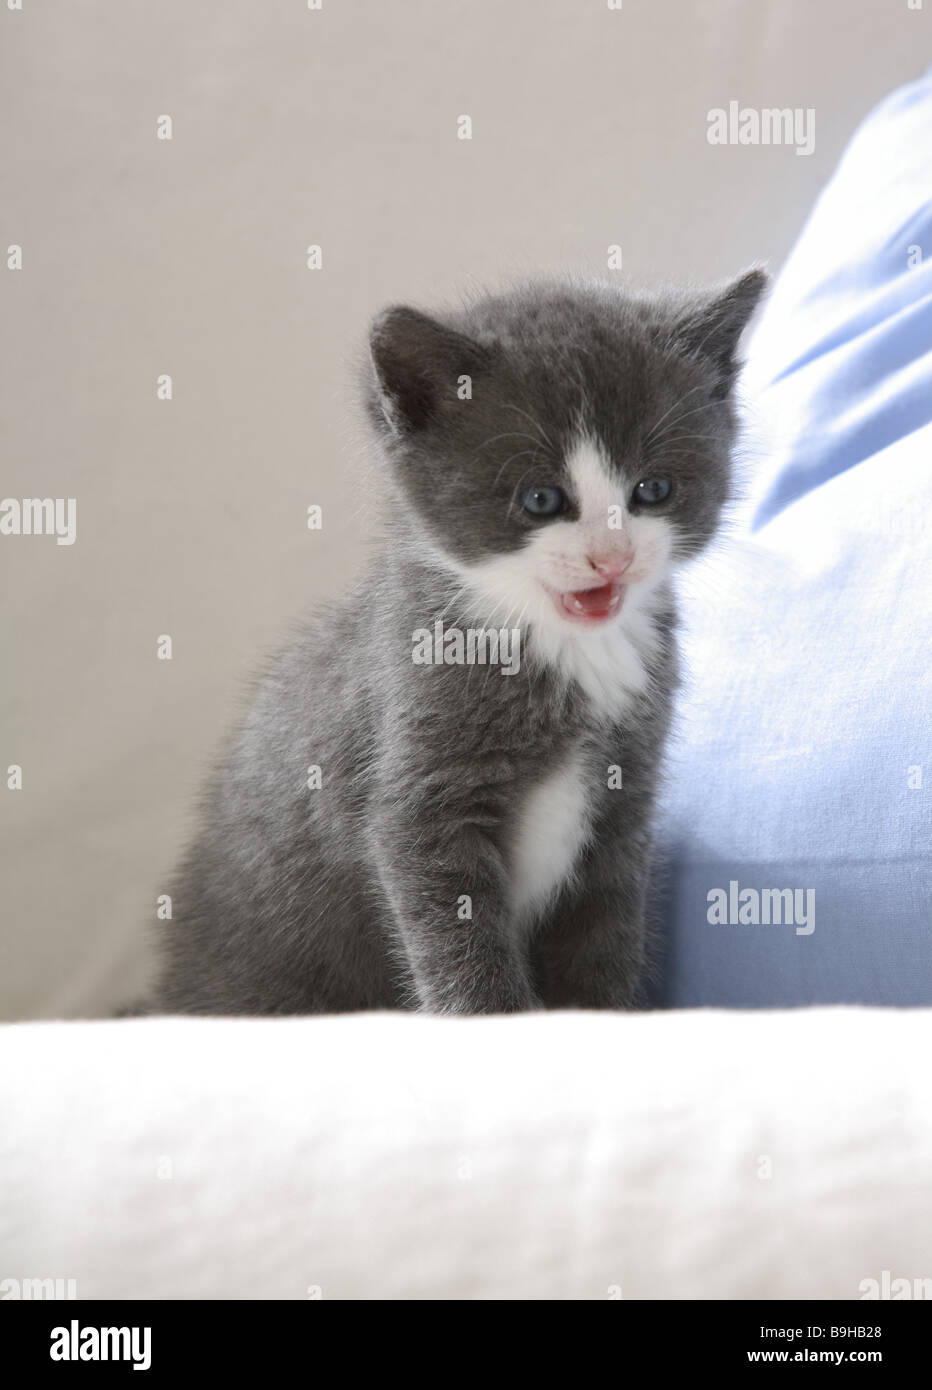 Couch Katze Junge weiß grau-steht Pelzkugel Seitenansicht Tiere Säugetiere  Haustiere Hauskatze Katze-junge Katze Baby Kätzchen junge junge  Stockfotografie - Alamy